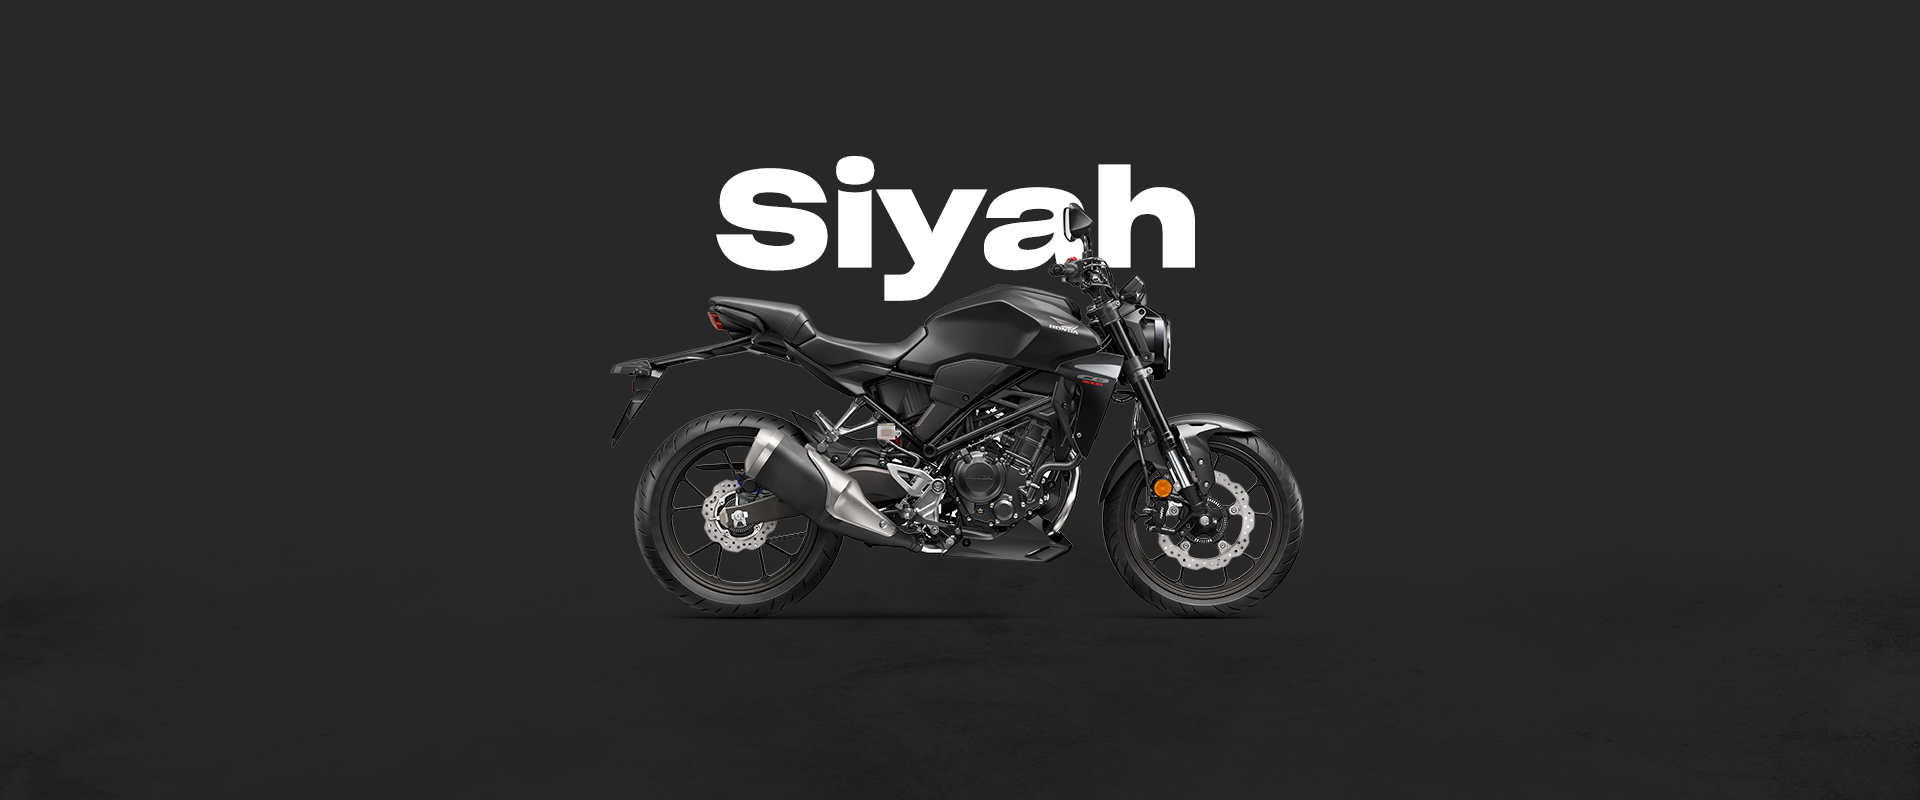  DRD Motorbikes Siyah - Mat Gunpowder Black Metallic (NH 436M)